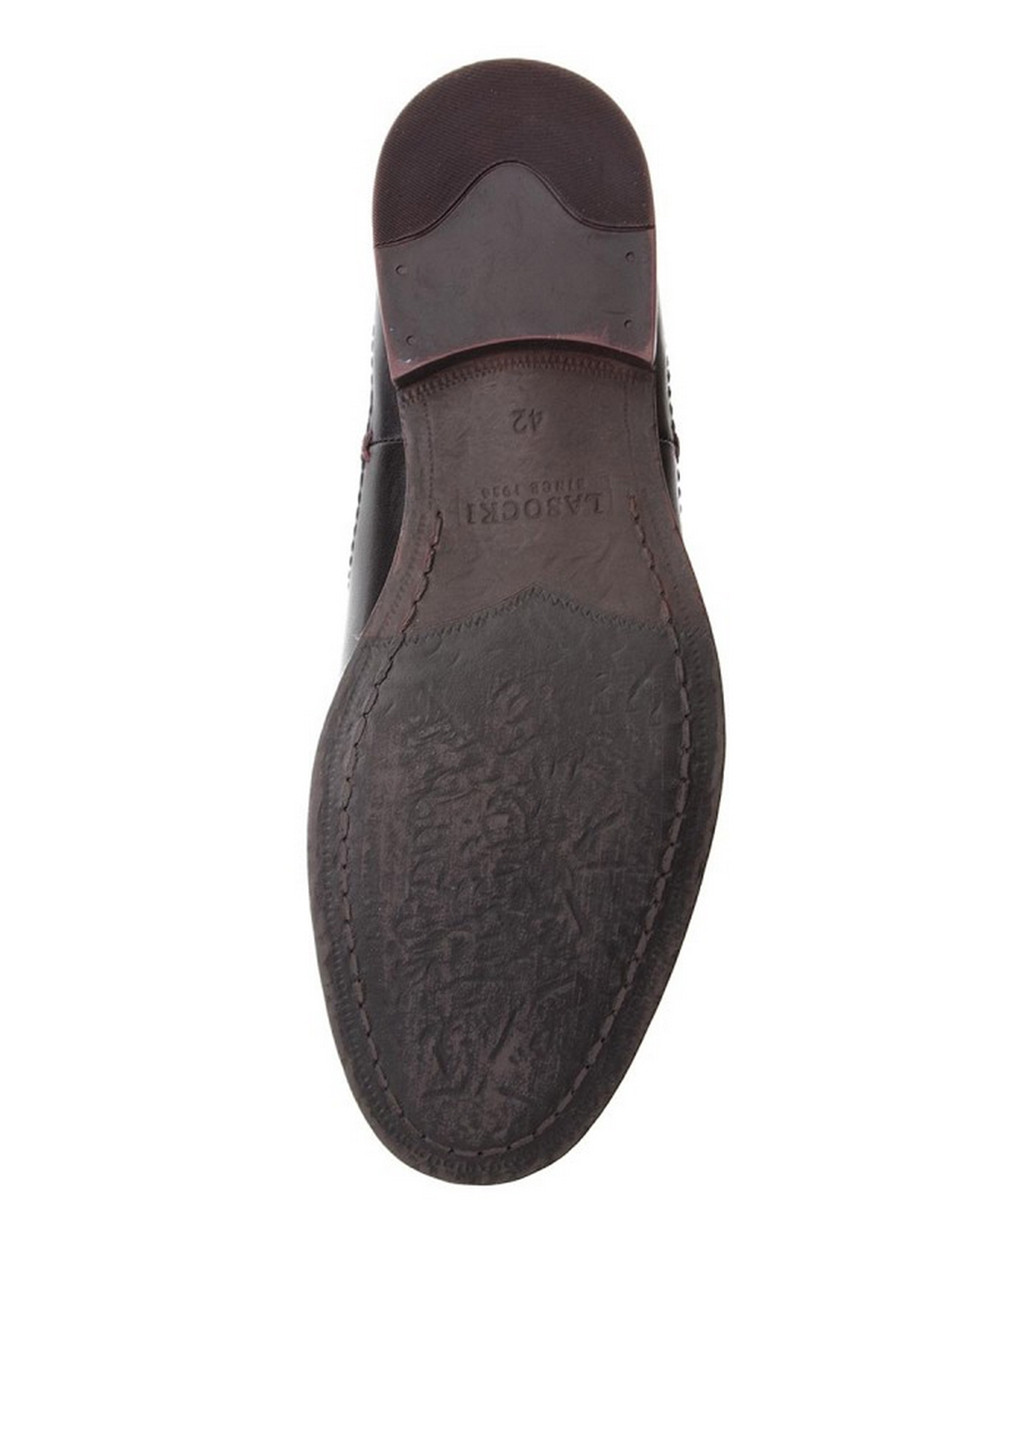 Черные осенние черевики lasocki for men mi07-c322-360-16 Lasocki for men